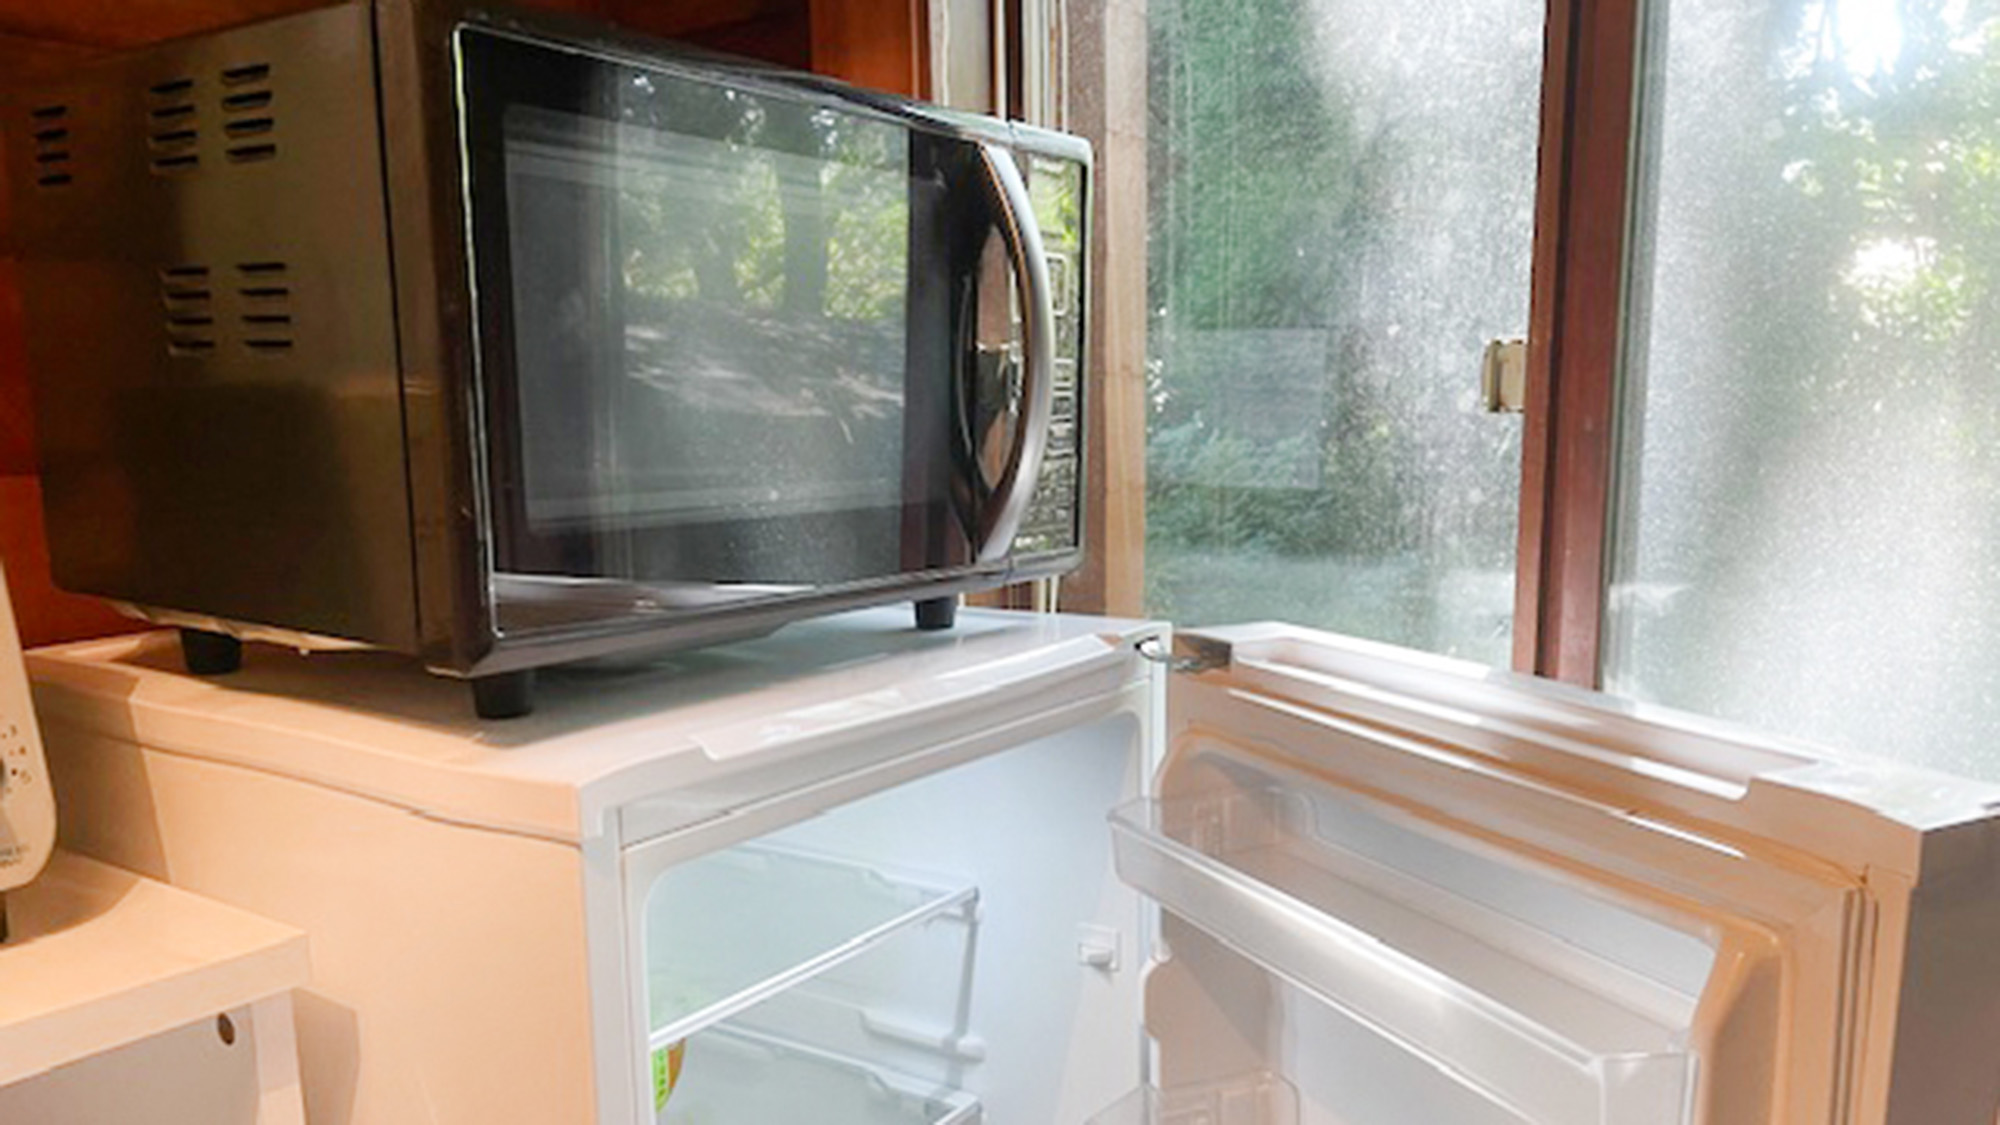 ・【キッチン】食料品を保存する冷蔵庫と食品の温め直しに使う電子レンジは必需品